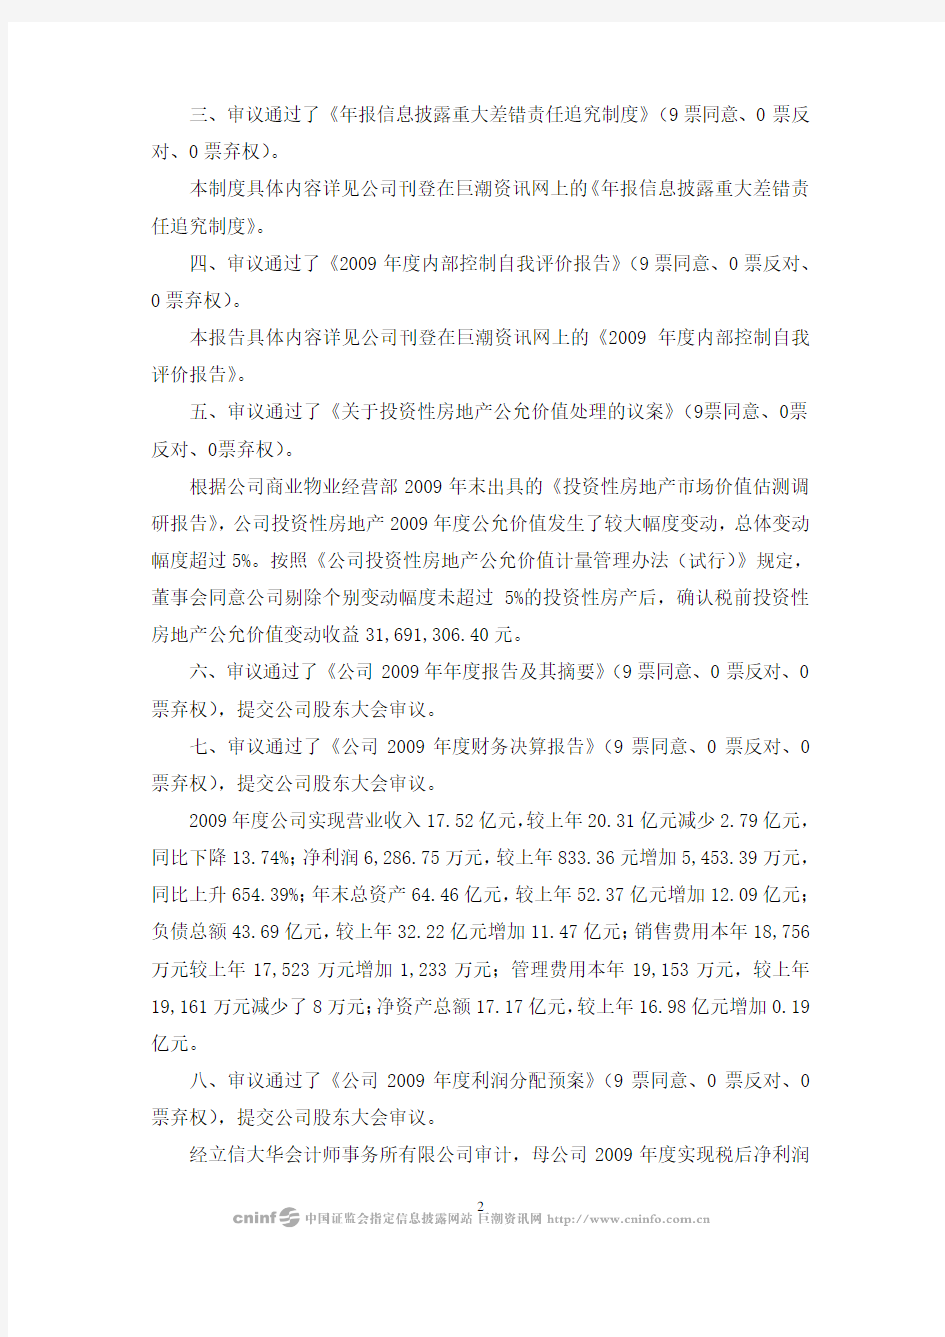 深圳中航地产股份有限公司第五届董事会第四十三次会议决议公告